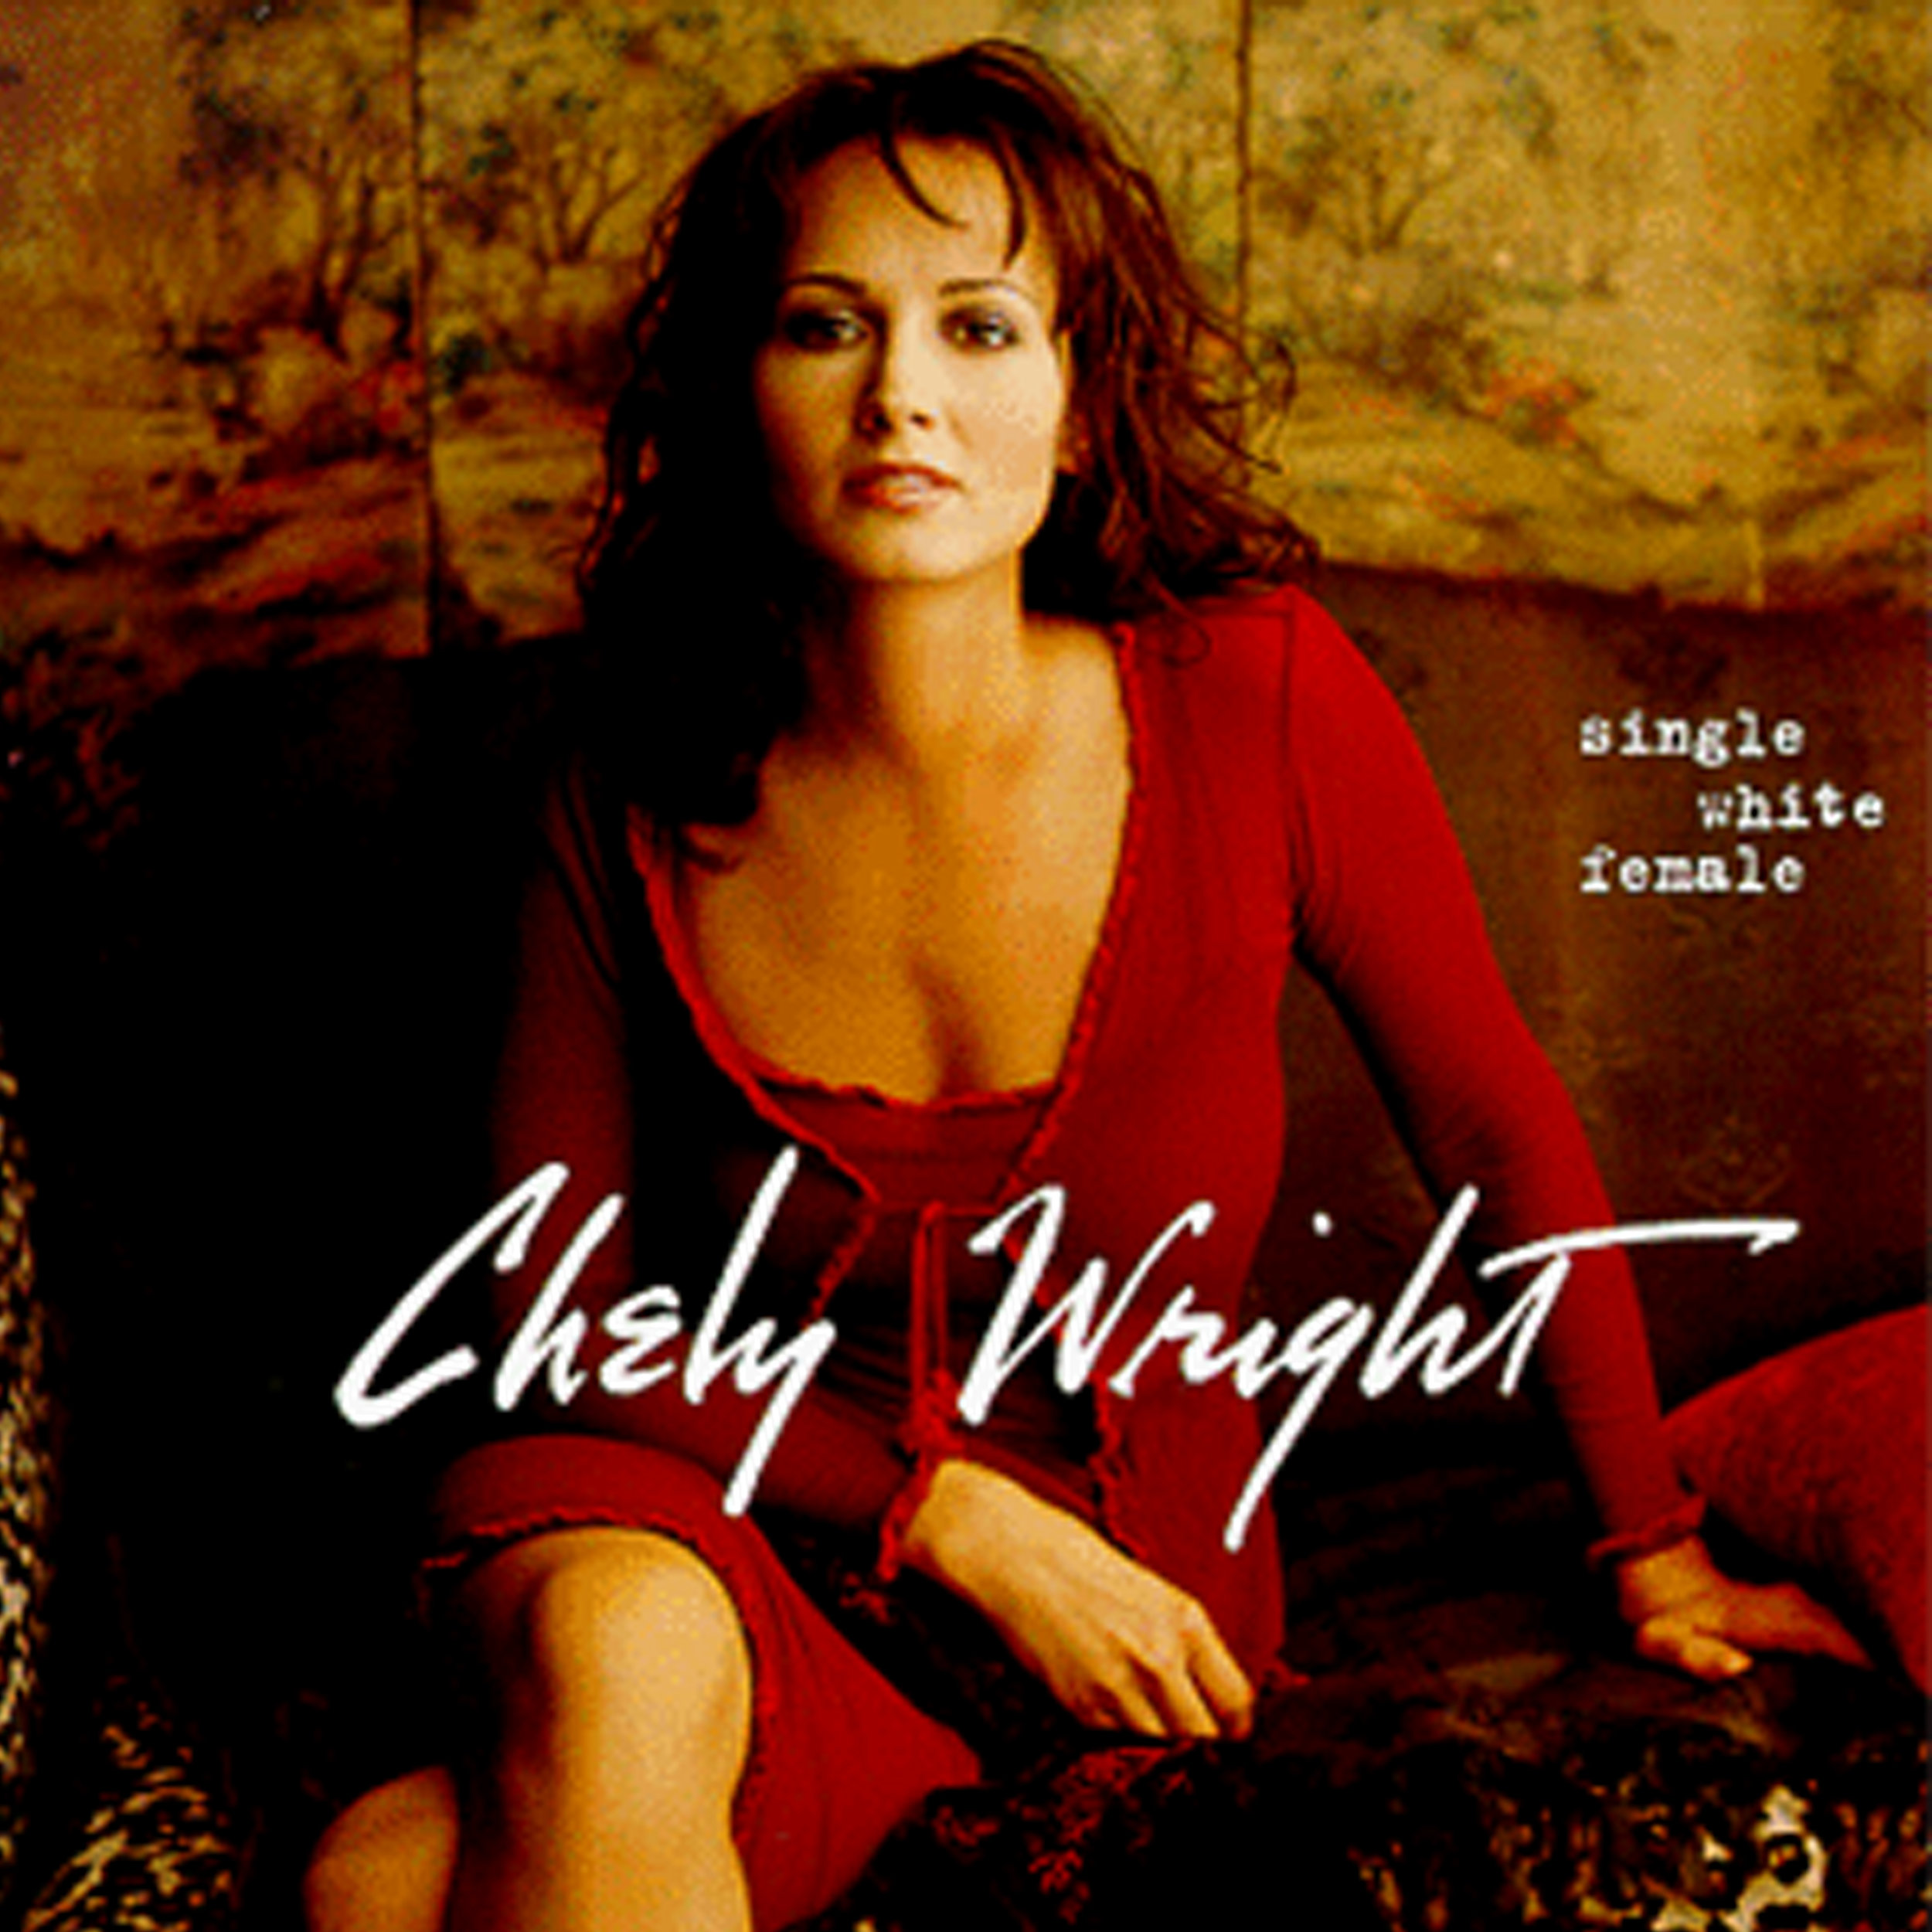 Chely Wright Single White Female.jpg